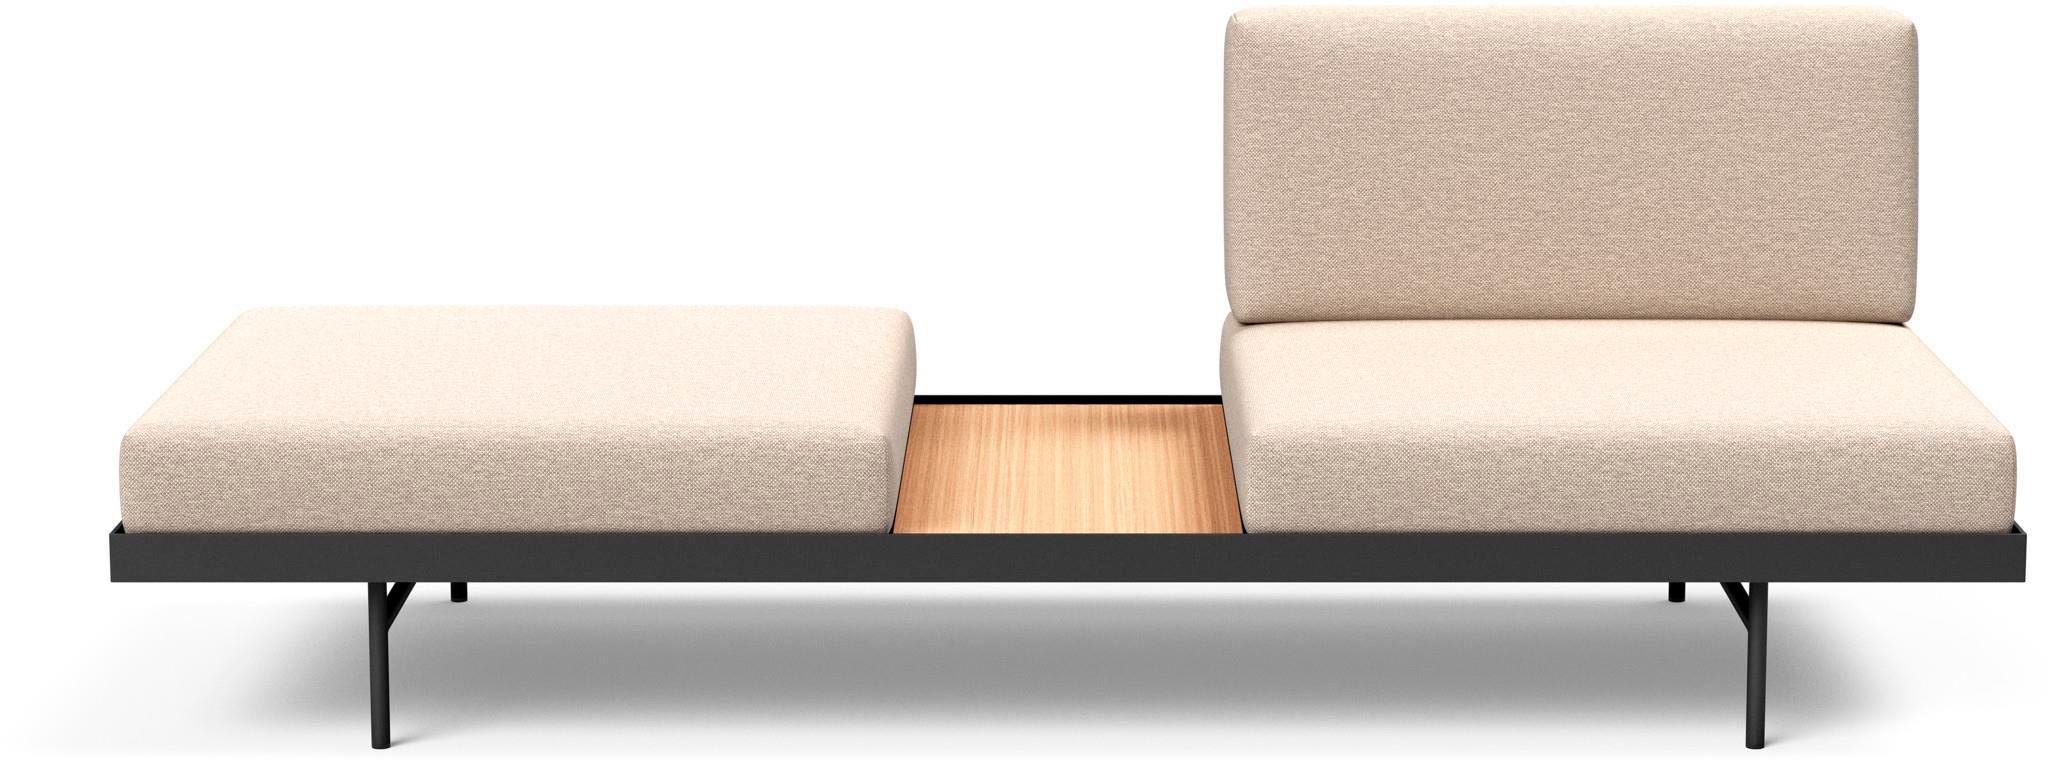 INNOVATION LIVING ™ Relaxliege »PURI«, Daybed mit integrierter Holzablage, flexible Aufteilung